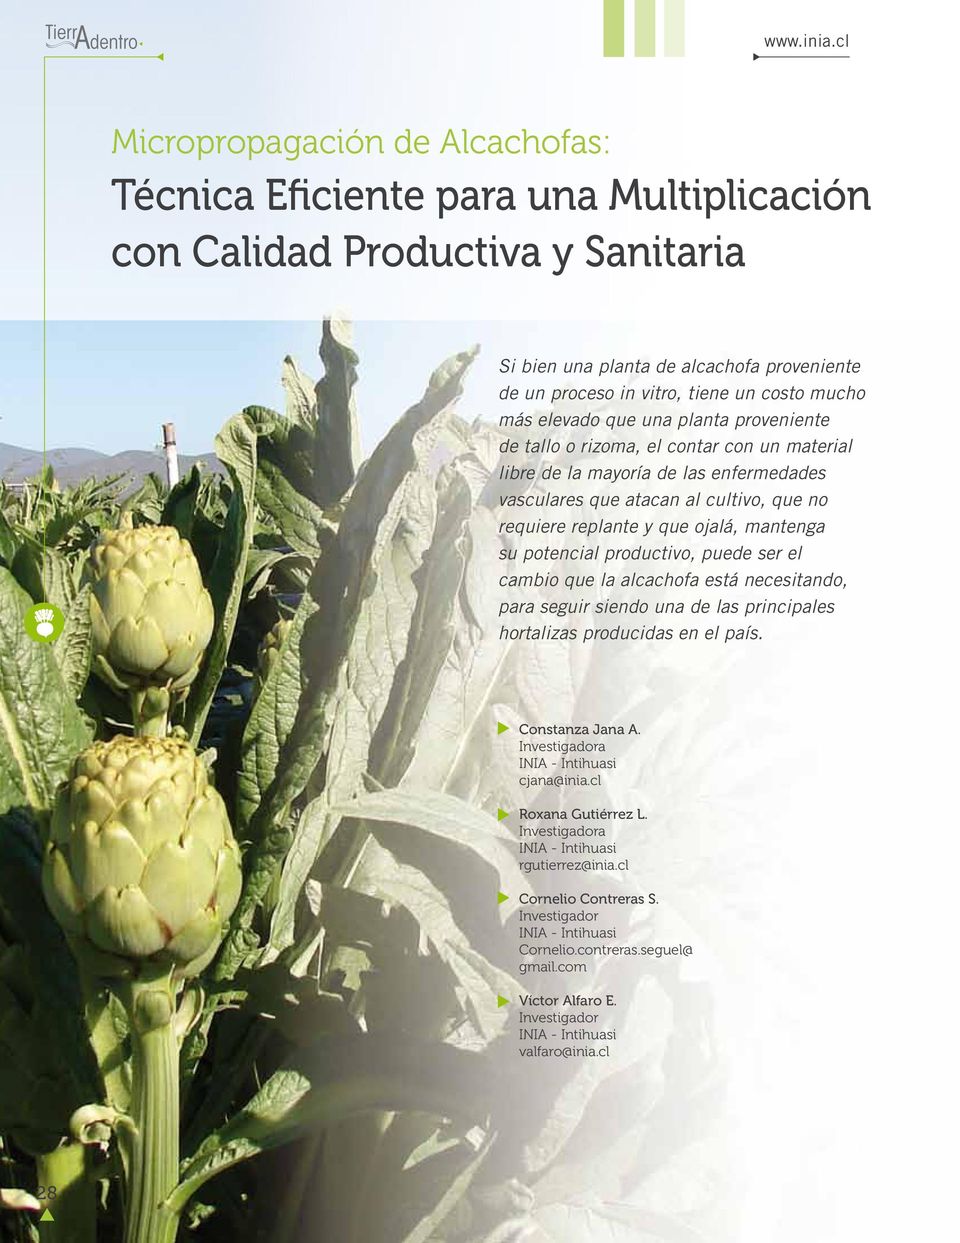 ojalá, mantenga su potencial productivo, puede ser el cambio que la alcachofa está necesitando, para seguir siendo una de las principales hortalizas producidas en el país. Constanza Jana A.